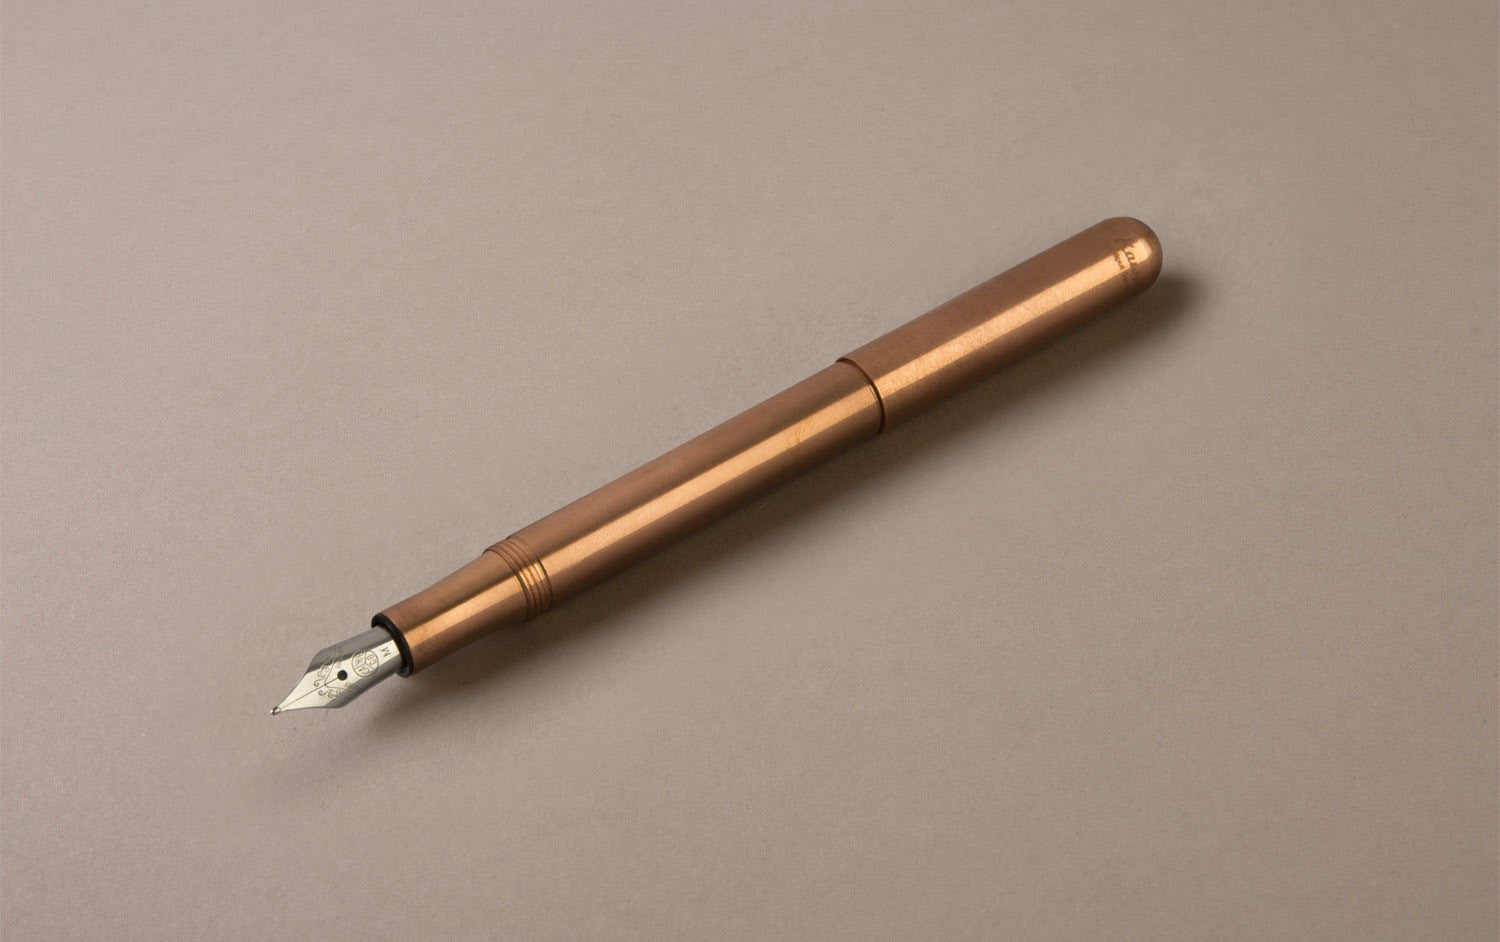 Matte Black Aluminium Kaweco AL Sport Ballpoint Pen – Choosing Keeping